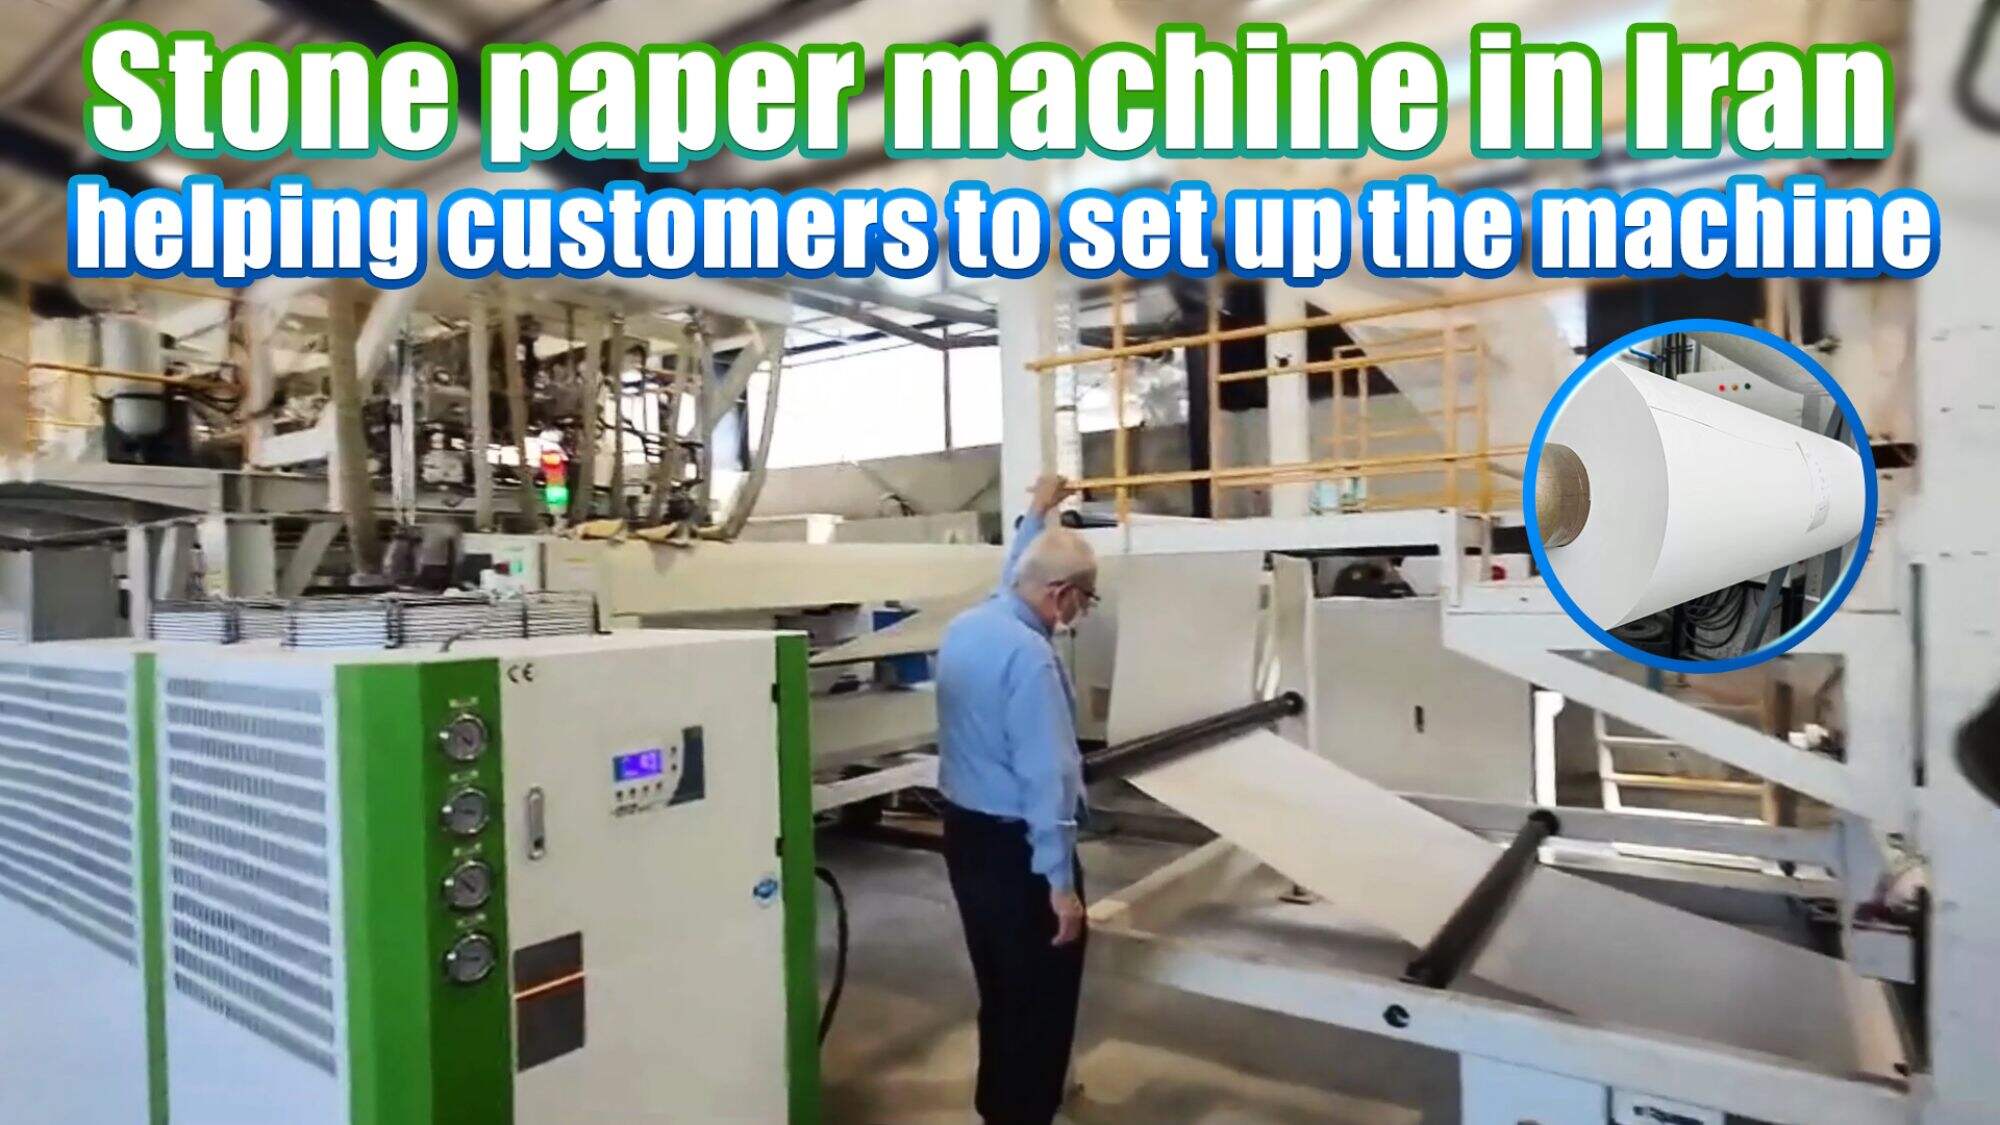 GSmach Stone paper machine in Iran